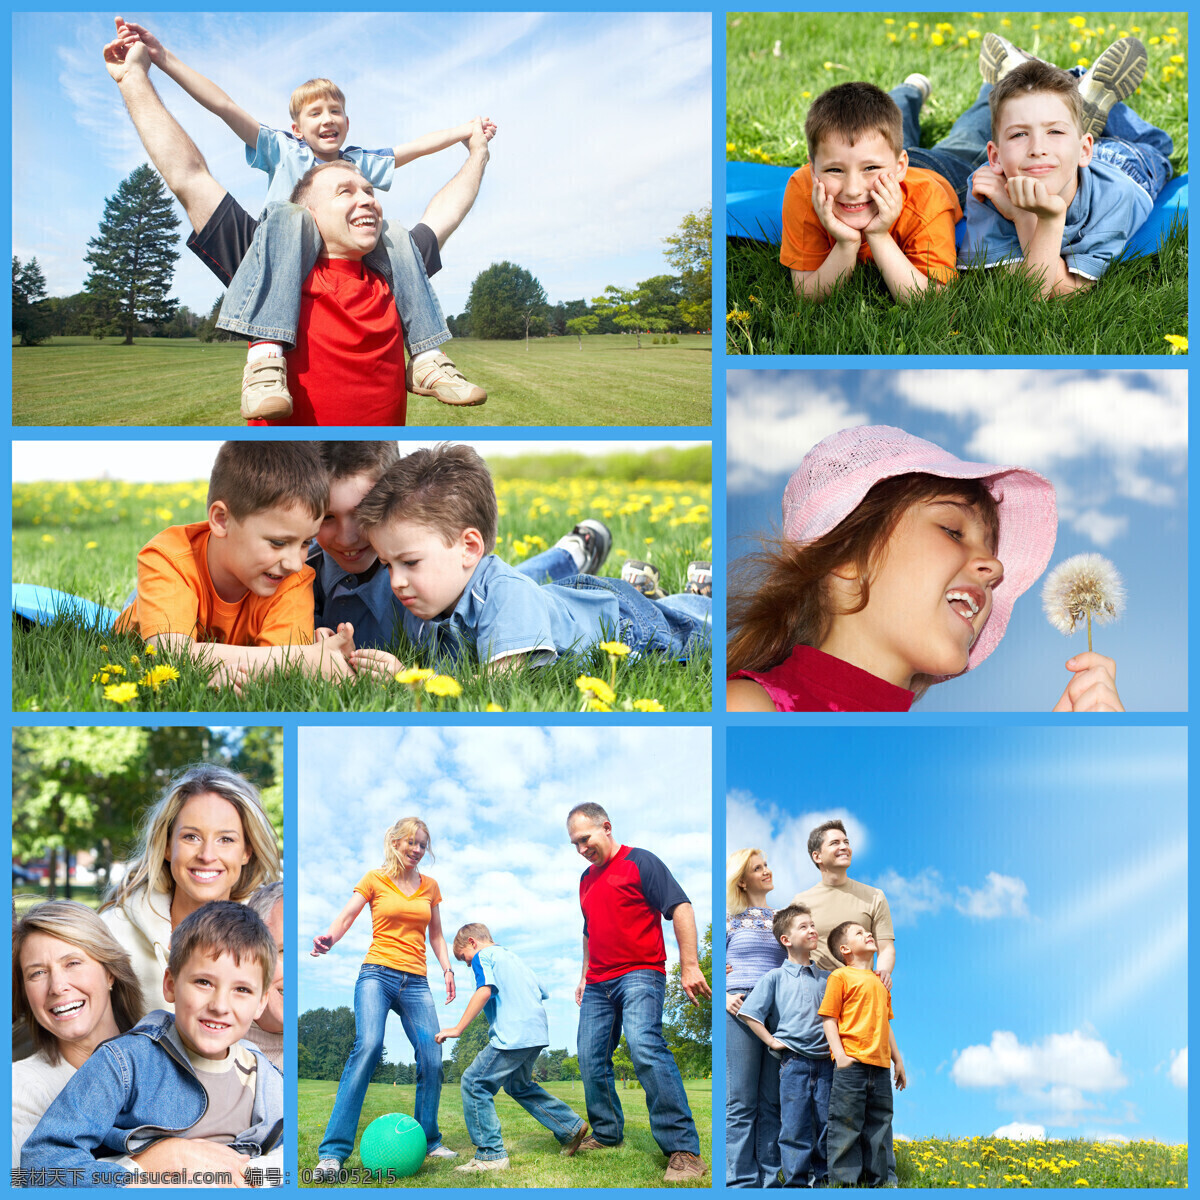 草地 上 游玩 一家人 照片 集合 蓝天白云 踢球 开心 花朵 幸福家庭 爸爸 妈妈 小男孩 小女孩 大人小孩 男人女人 生活人物 人物图片